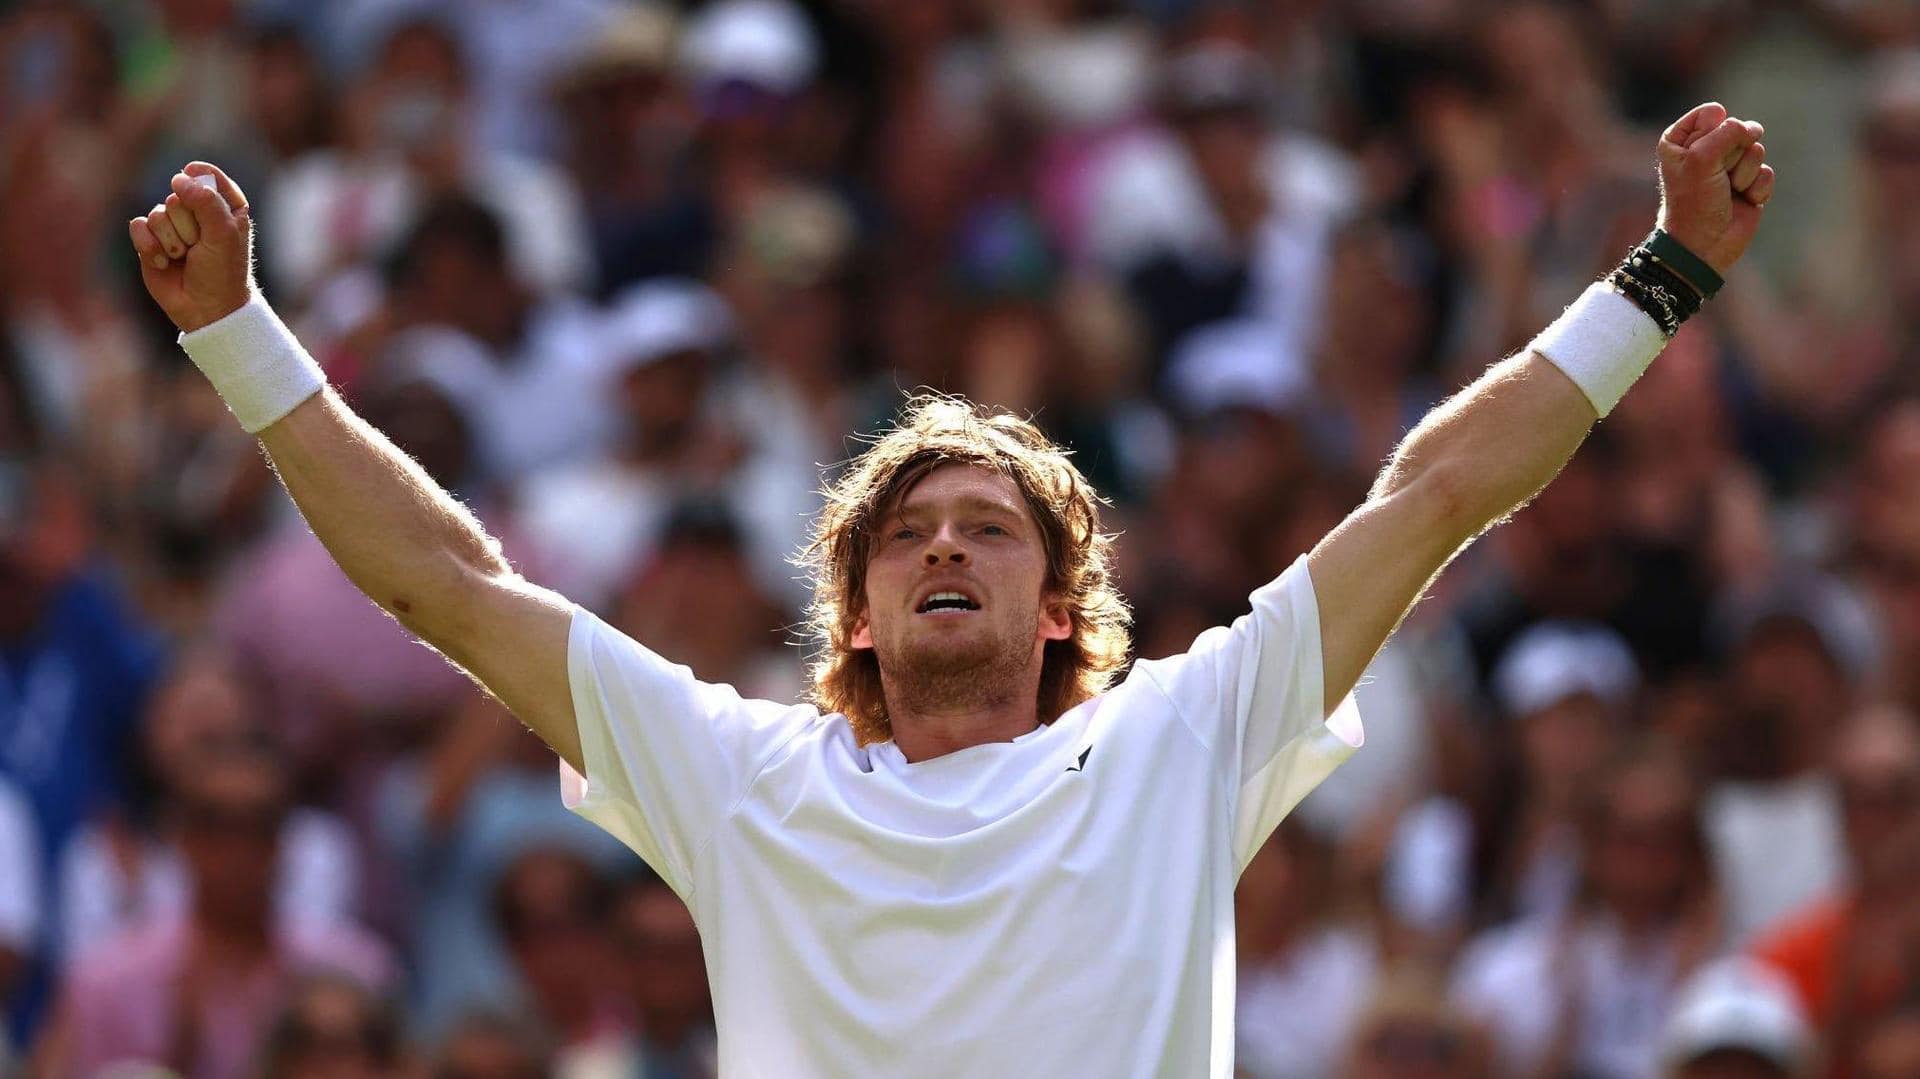 2023 Wimbledon, Andrey Rublev reaches quarter-finals: Key stats